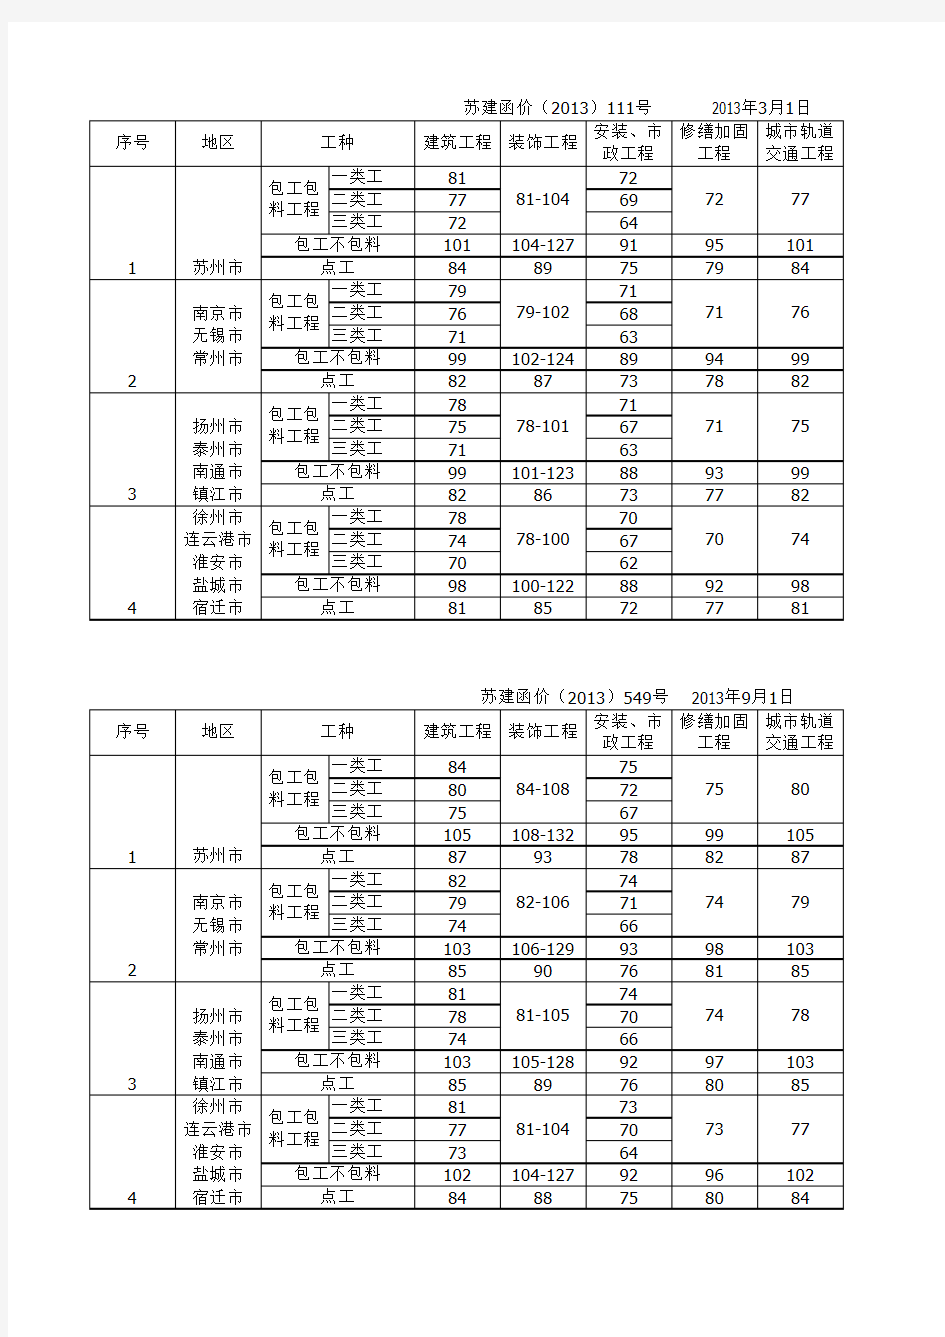 江苏省人工单价调整汇总(2013-2016)